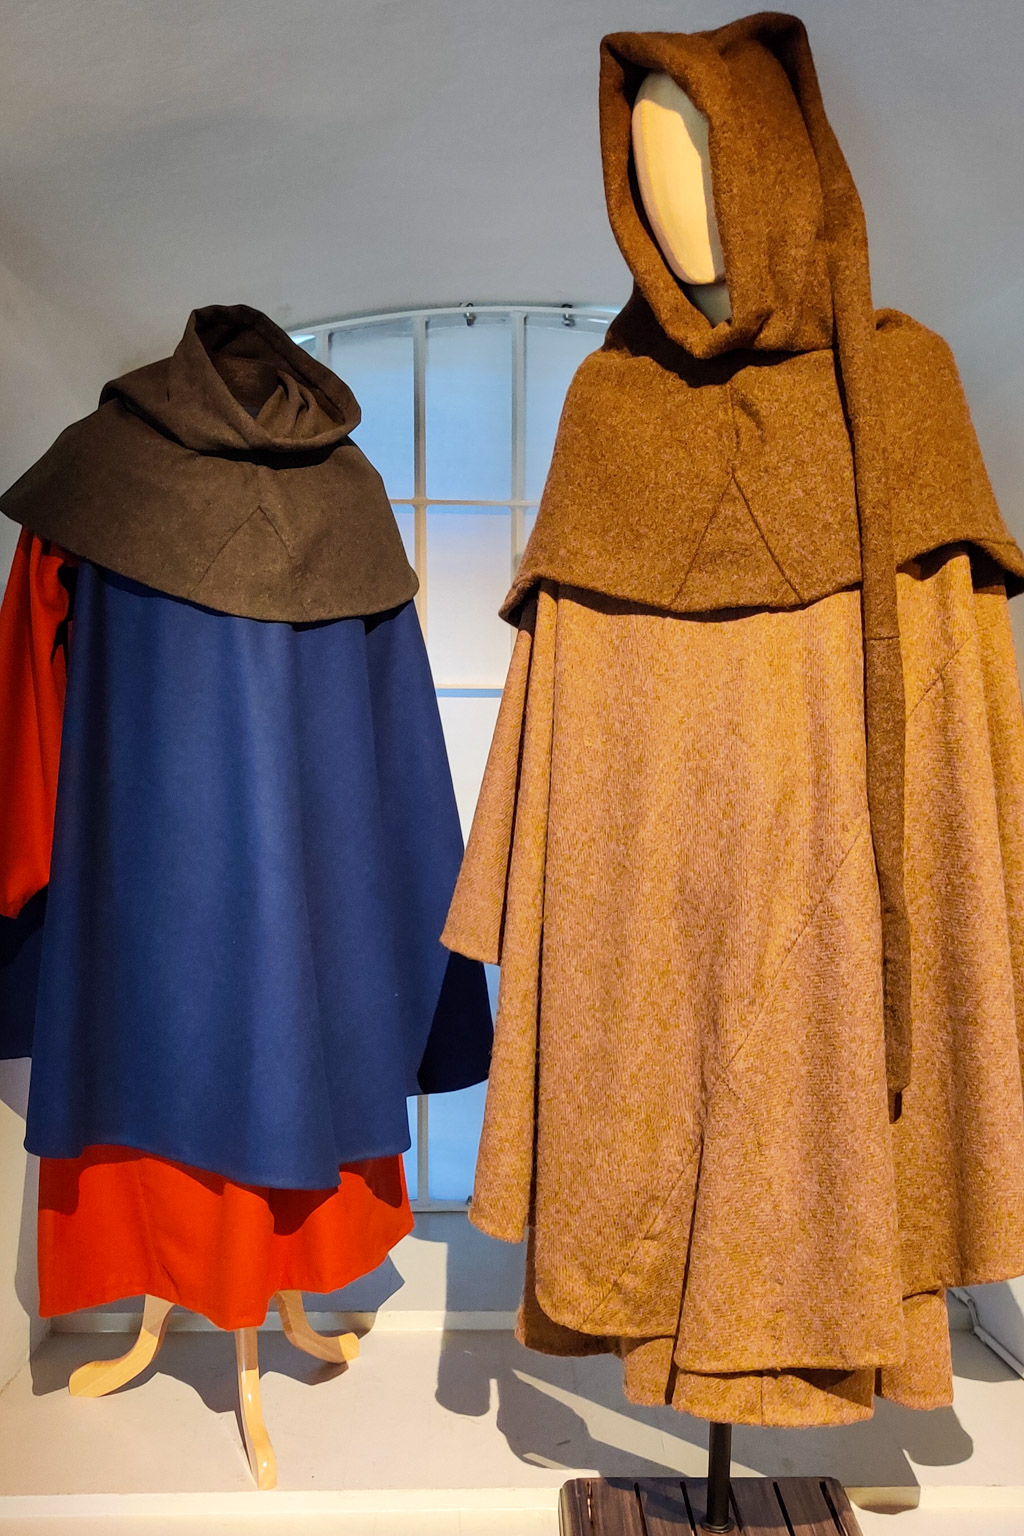 Klädedräkter från medeltiden kunde vara färgglada